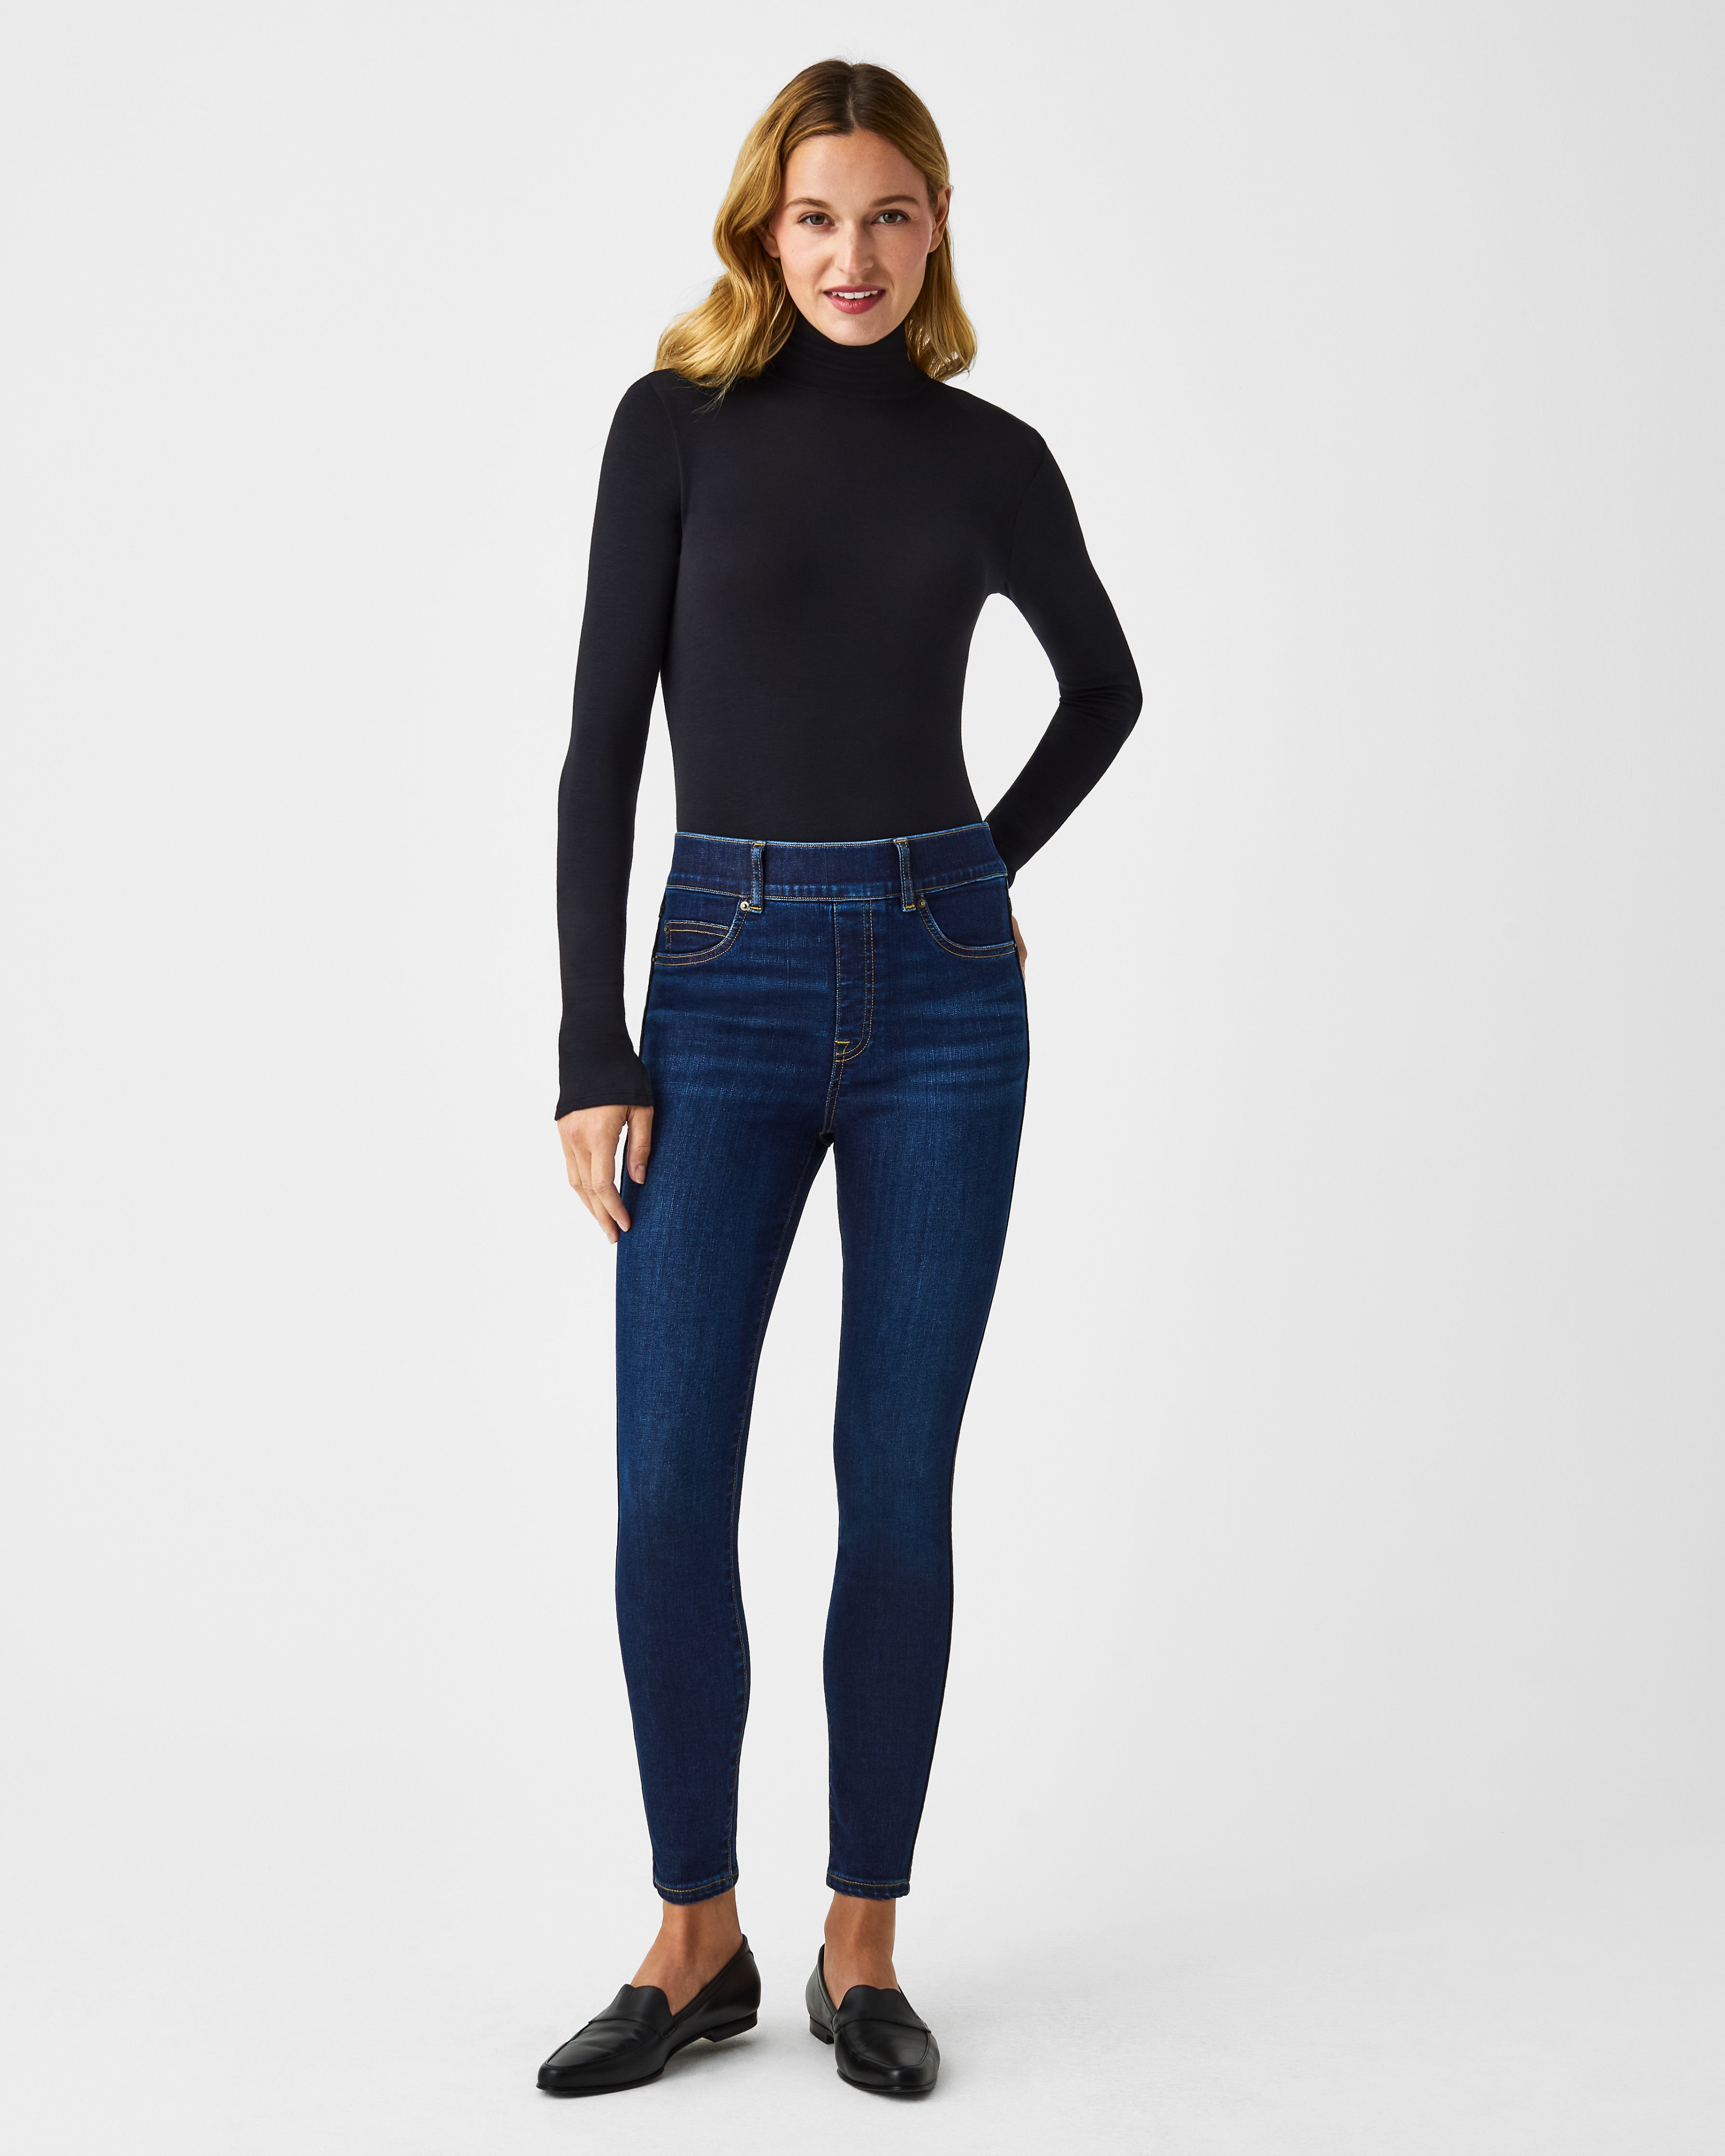 SPANX, Jeans, Spanx The Slimx Super Skinny Black Jeans Size 26